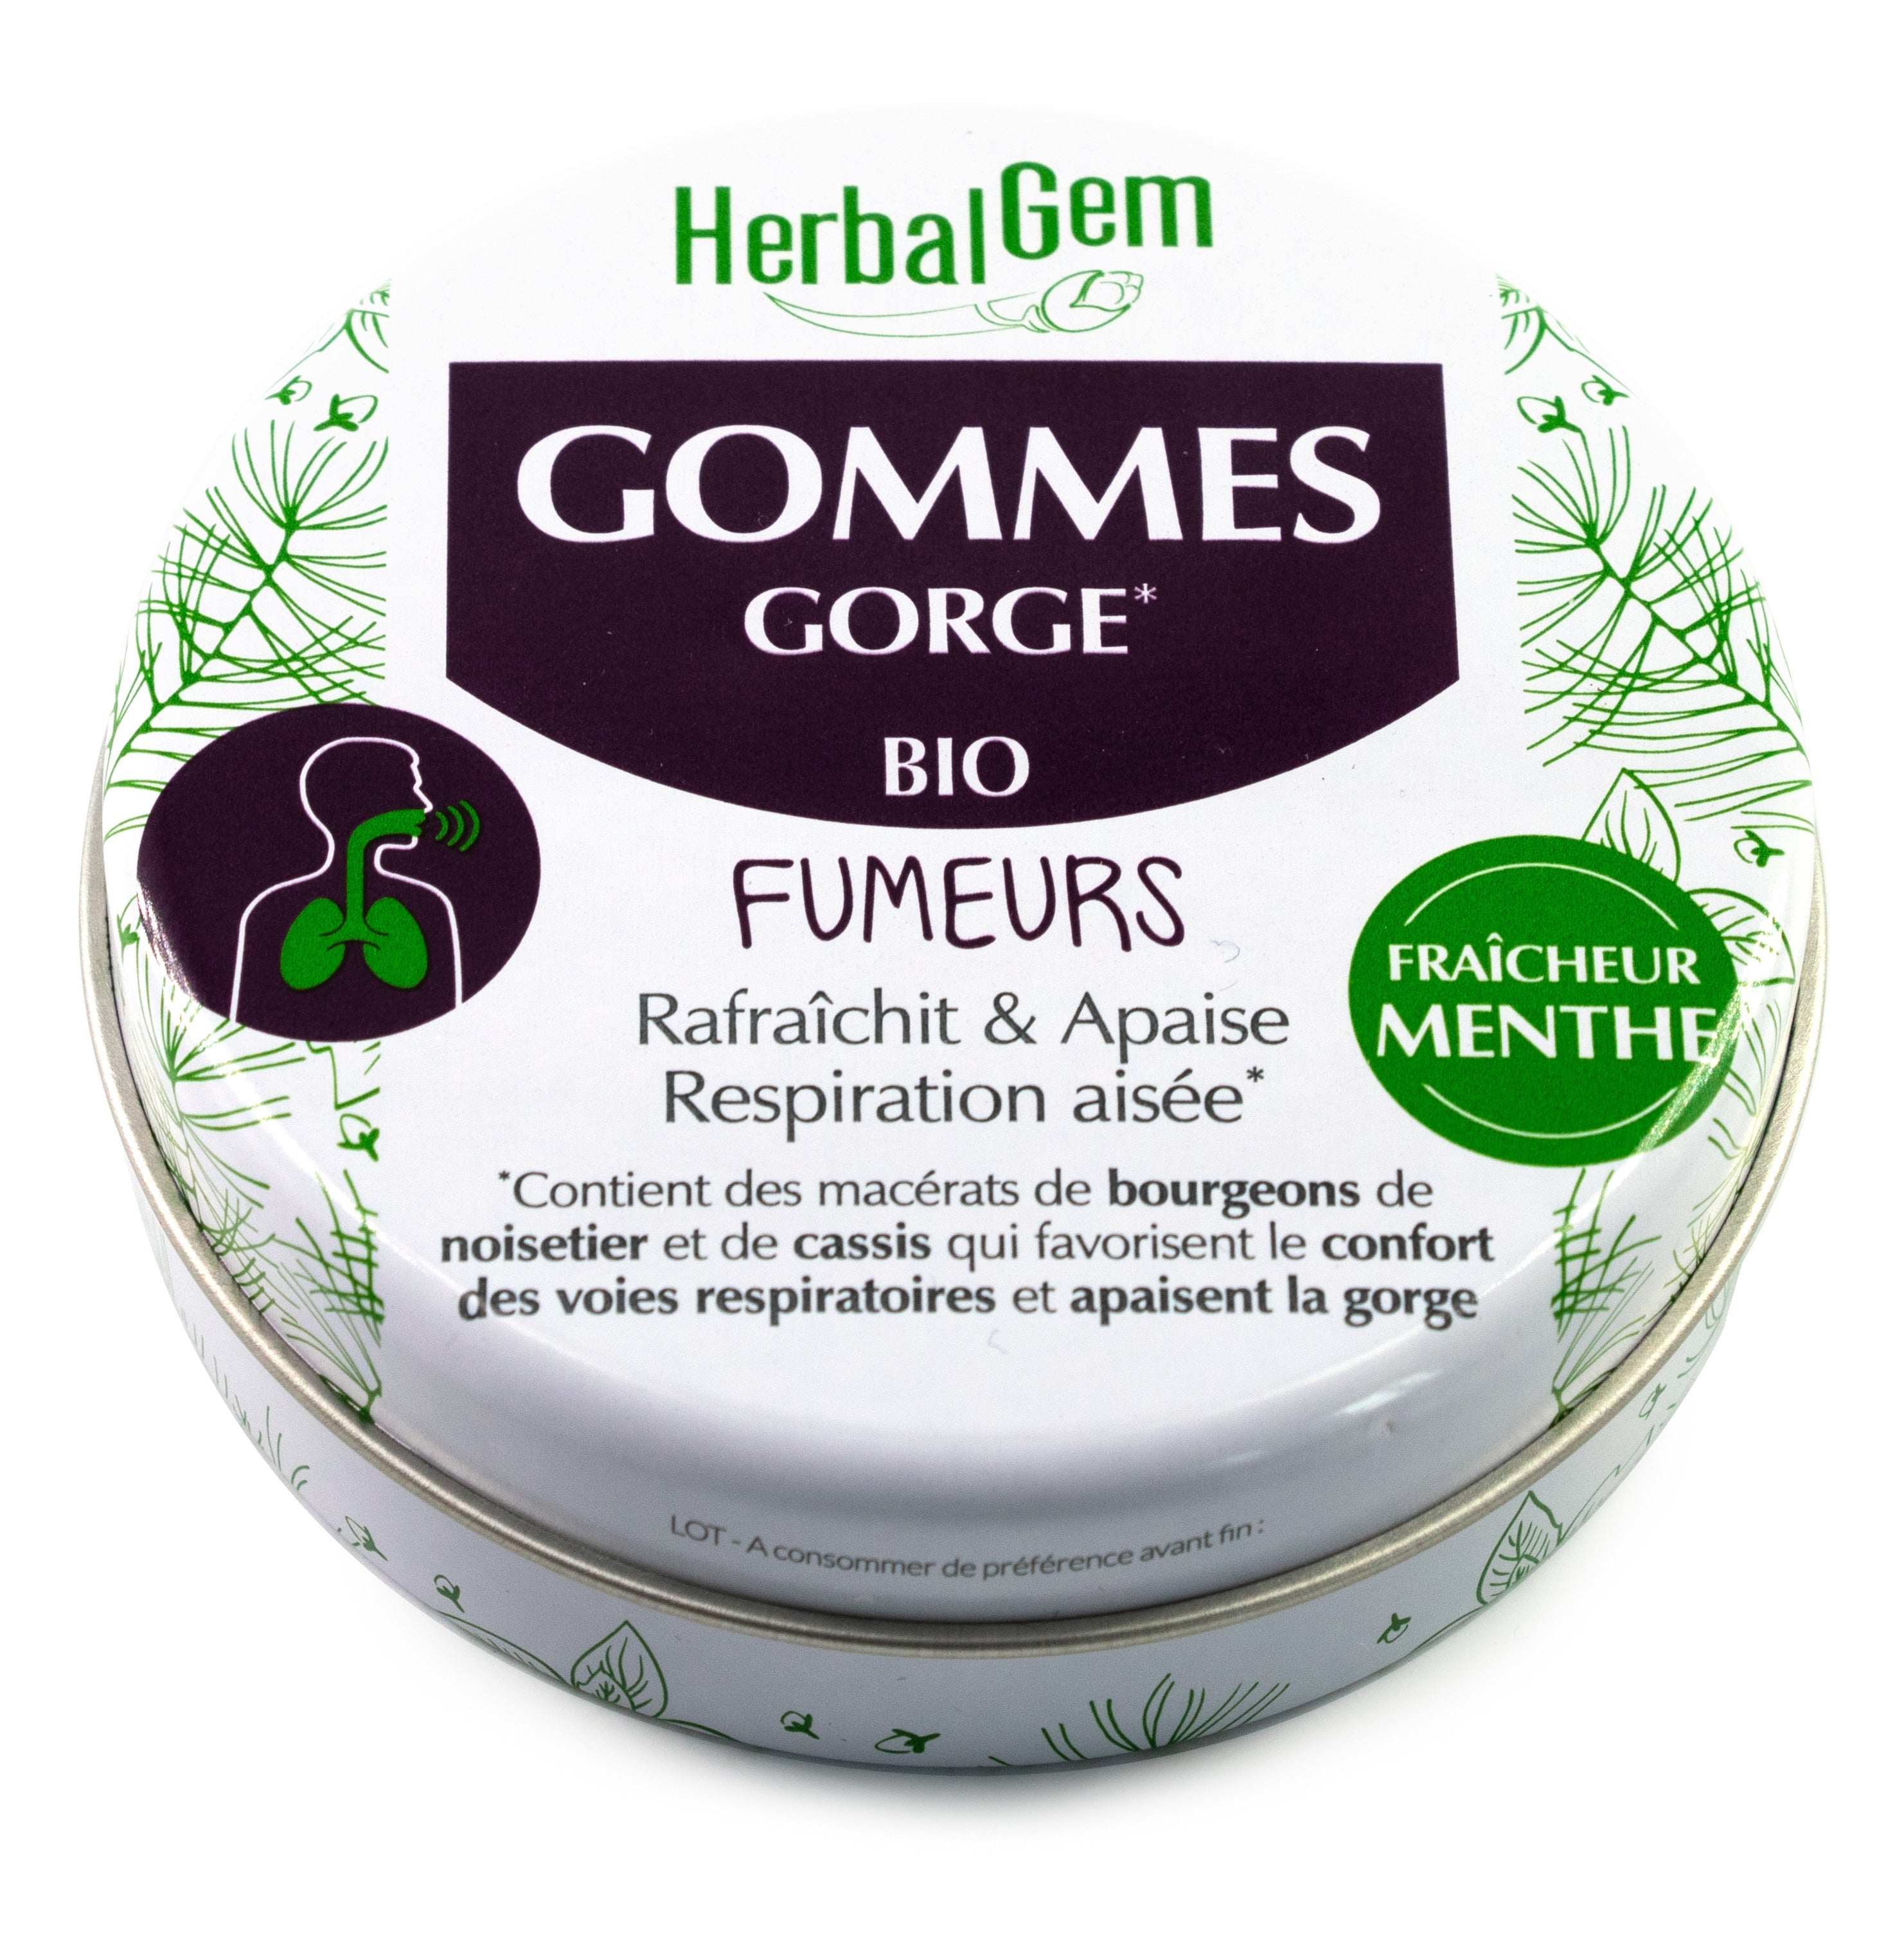 GOMMES GORGE FUMEURS - Bio